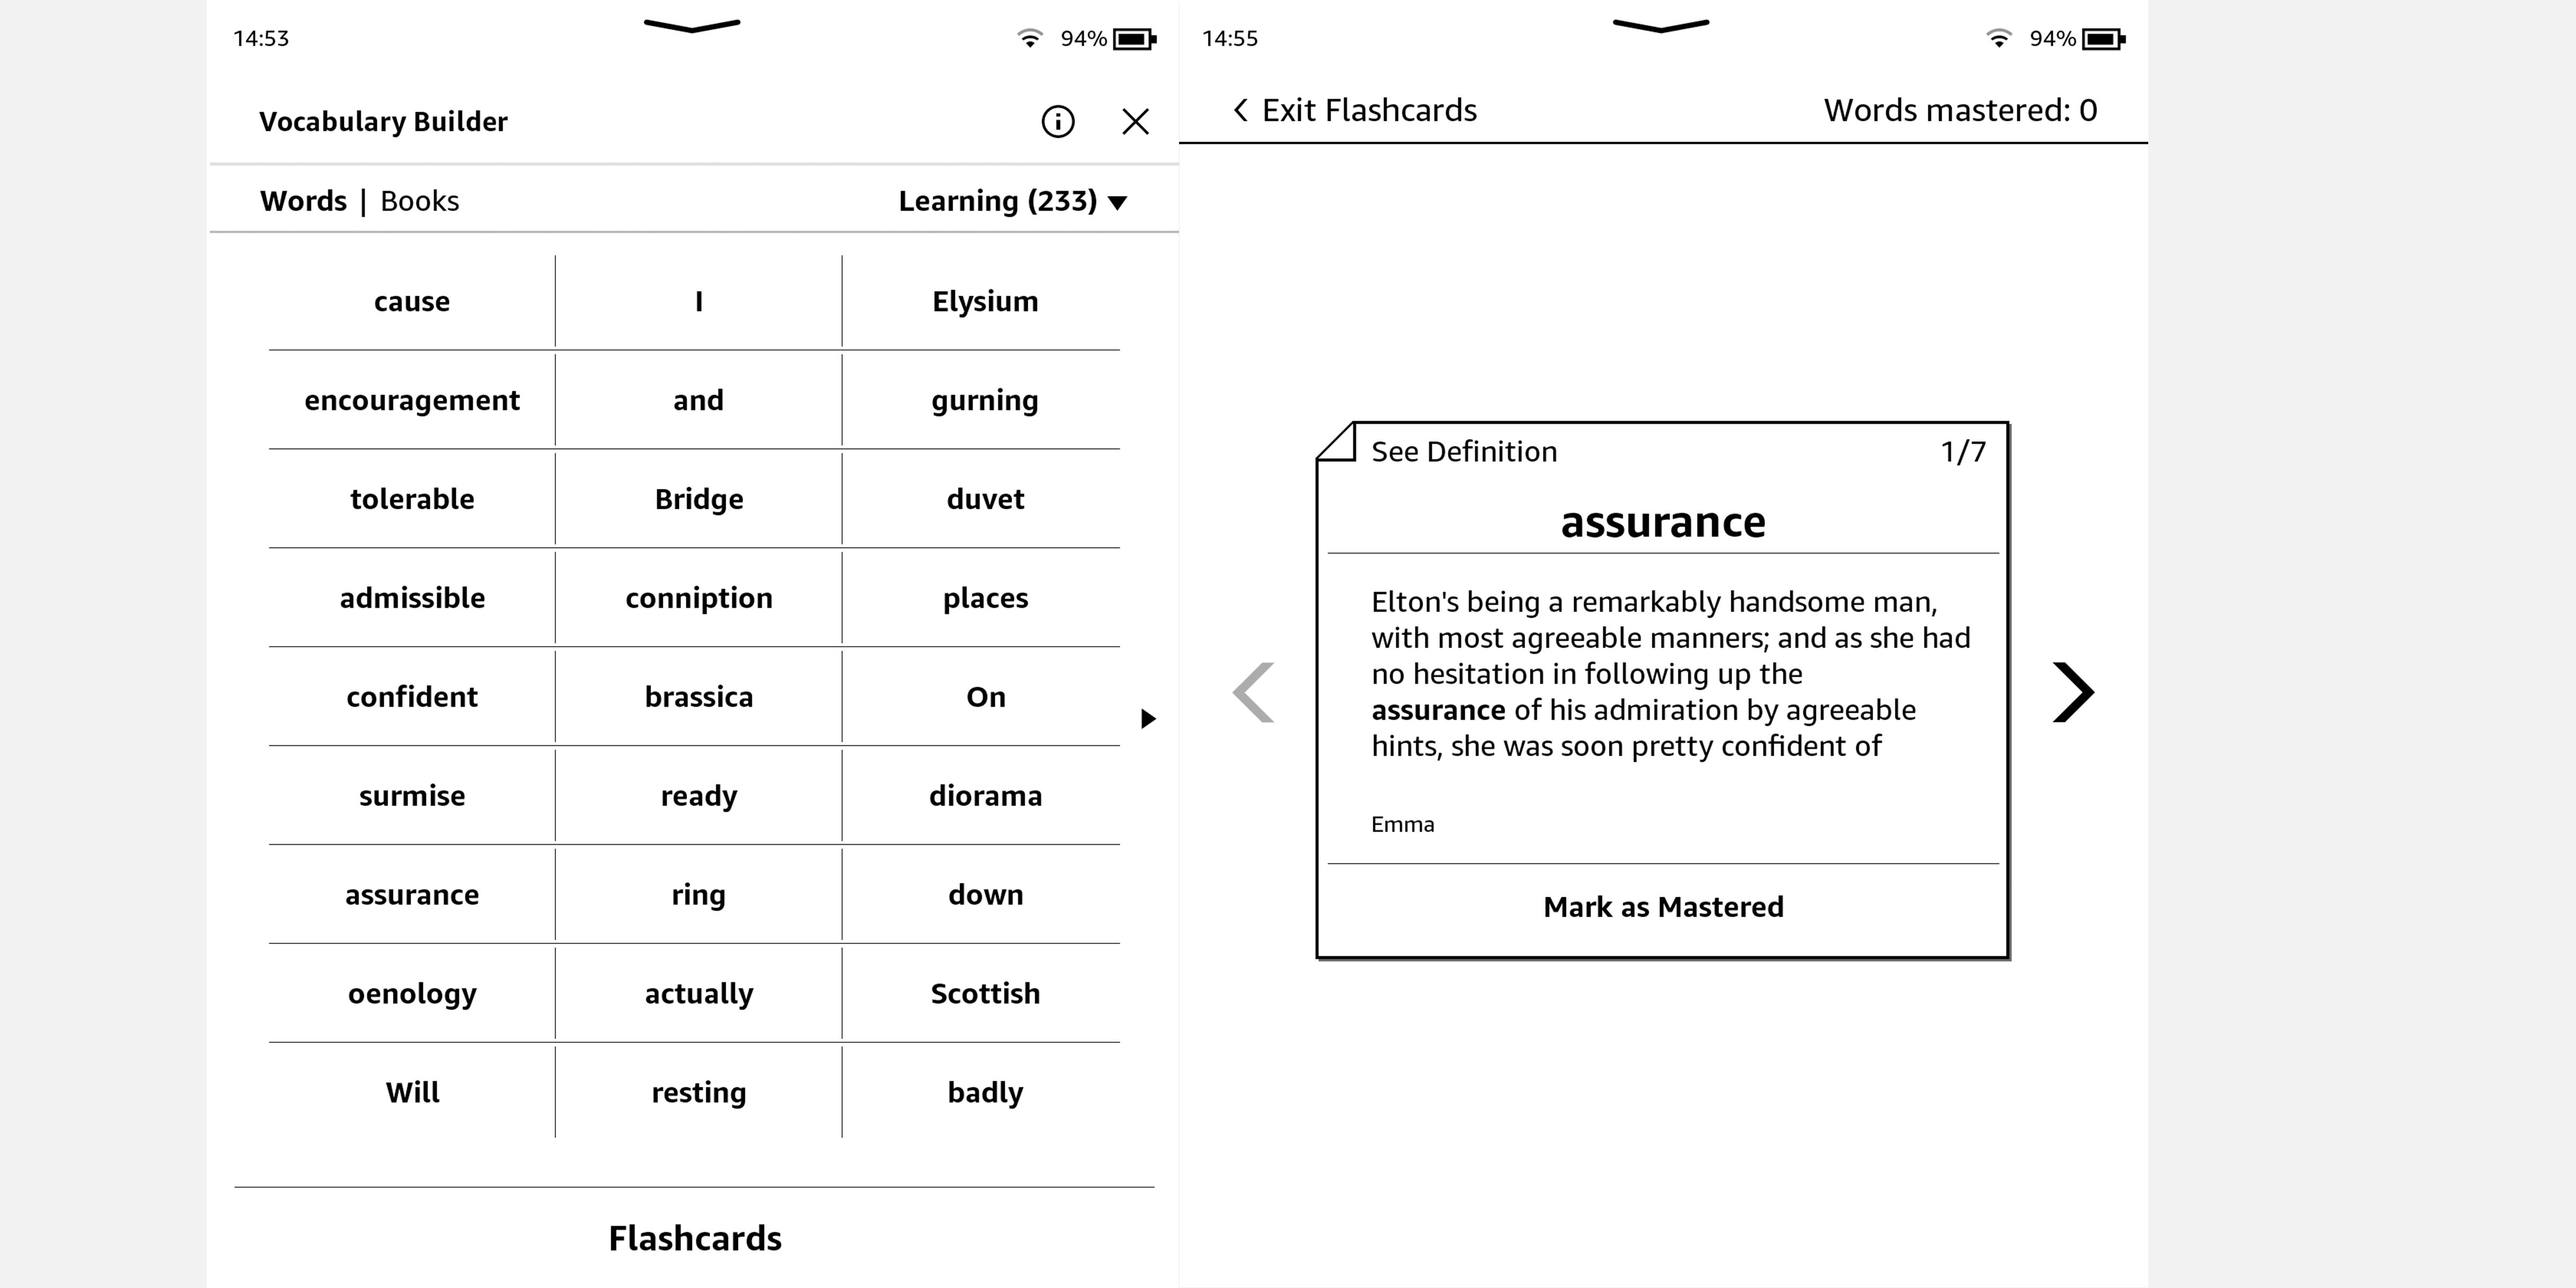 تصویری از Kindle Oasis که کارکردهای Vocabulary Builder و Flashcards را نشان می دهد